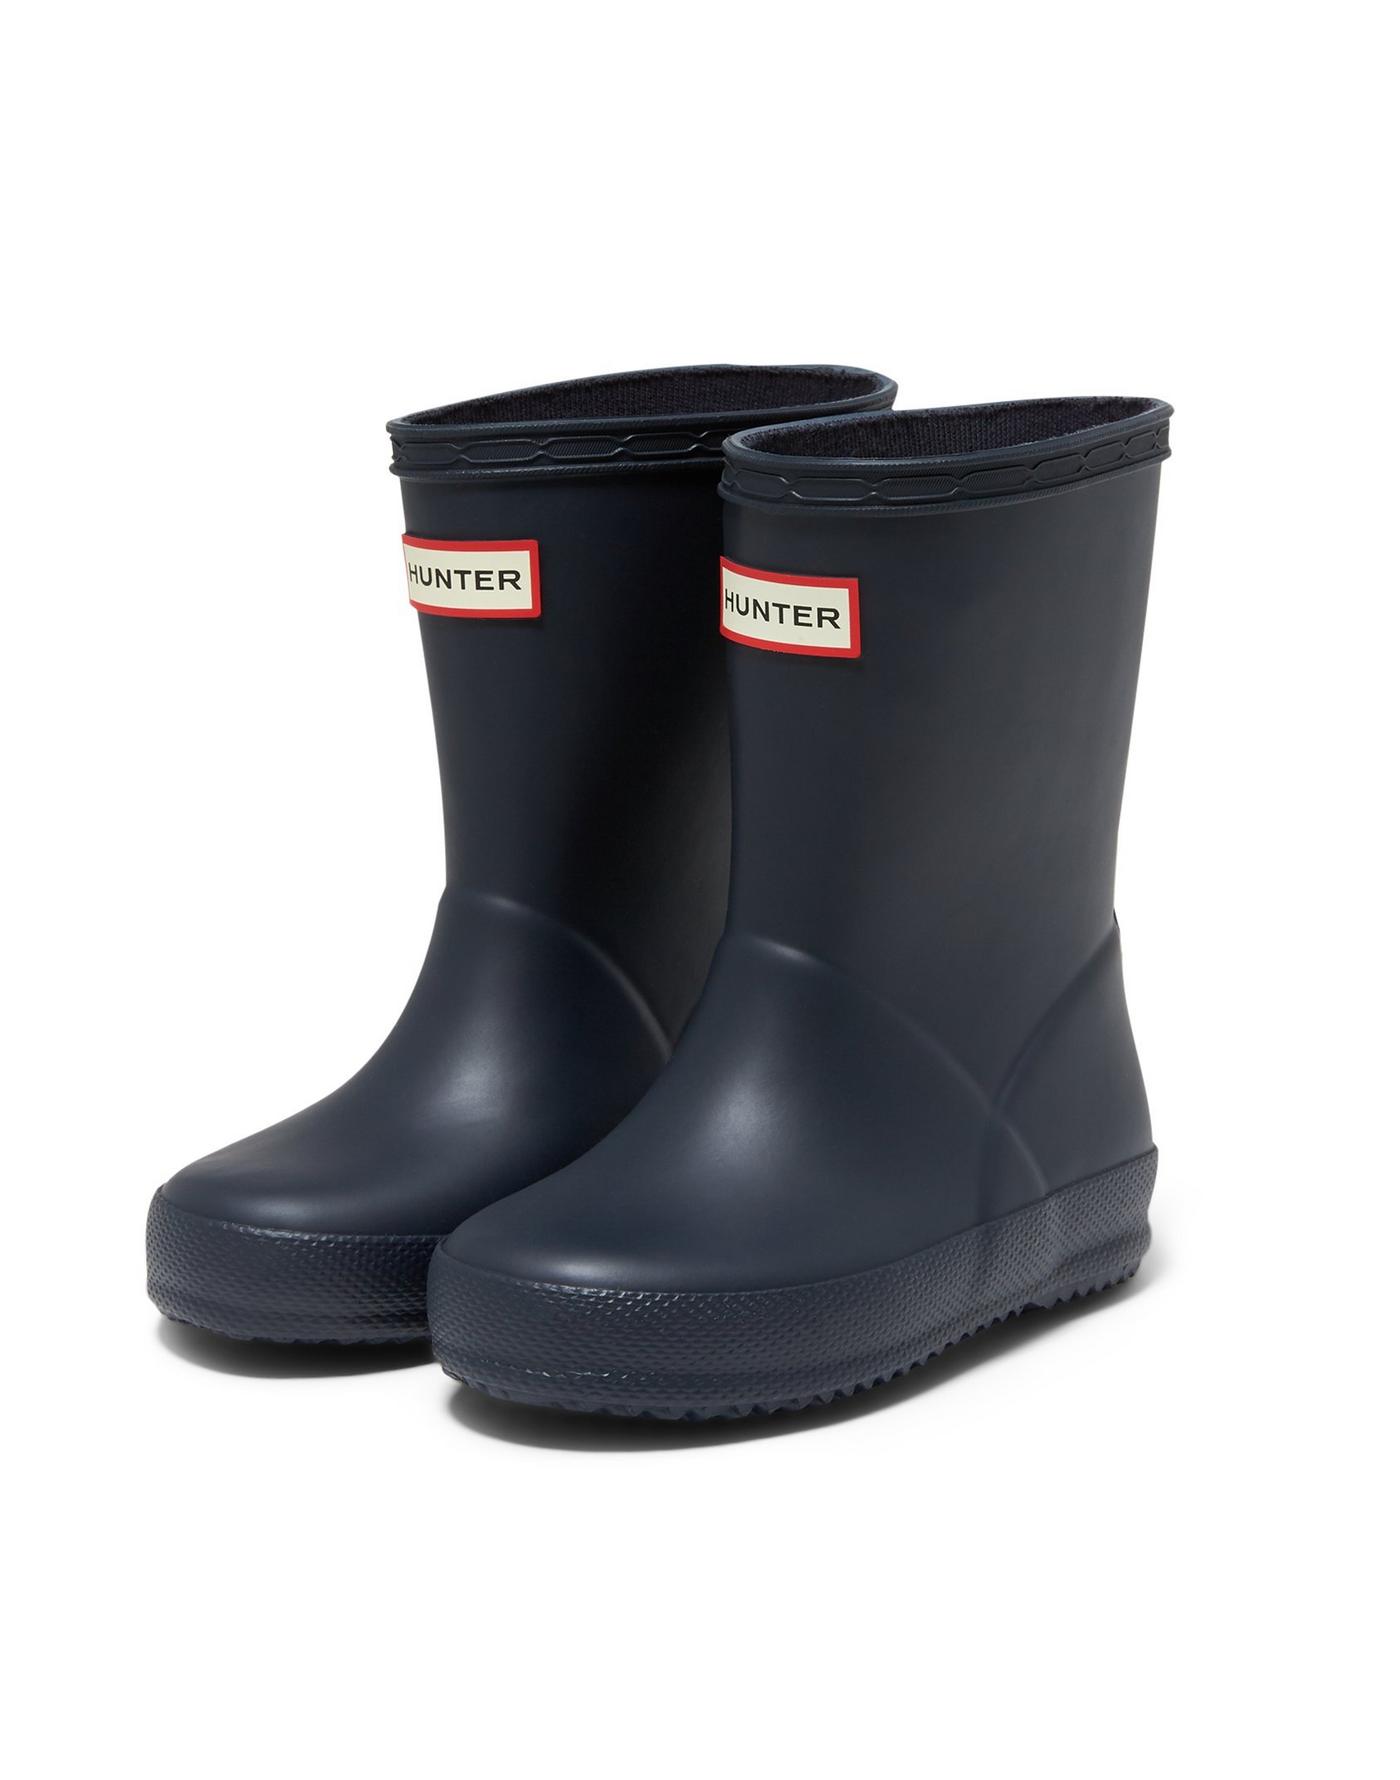 rain boots for kids, Hunter rain boots